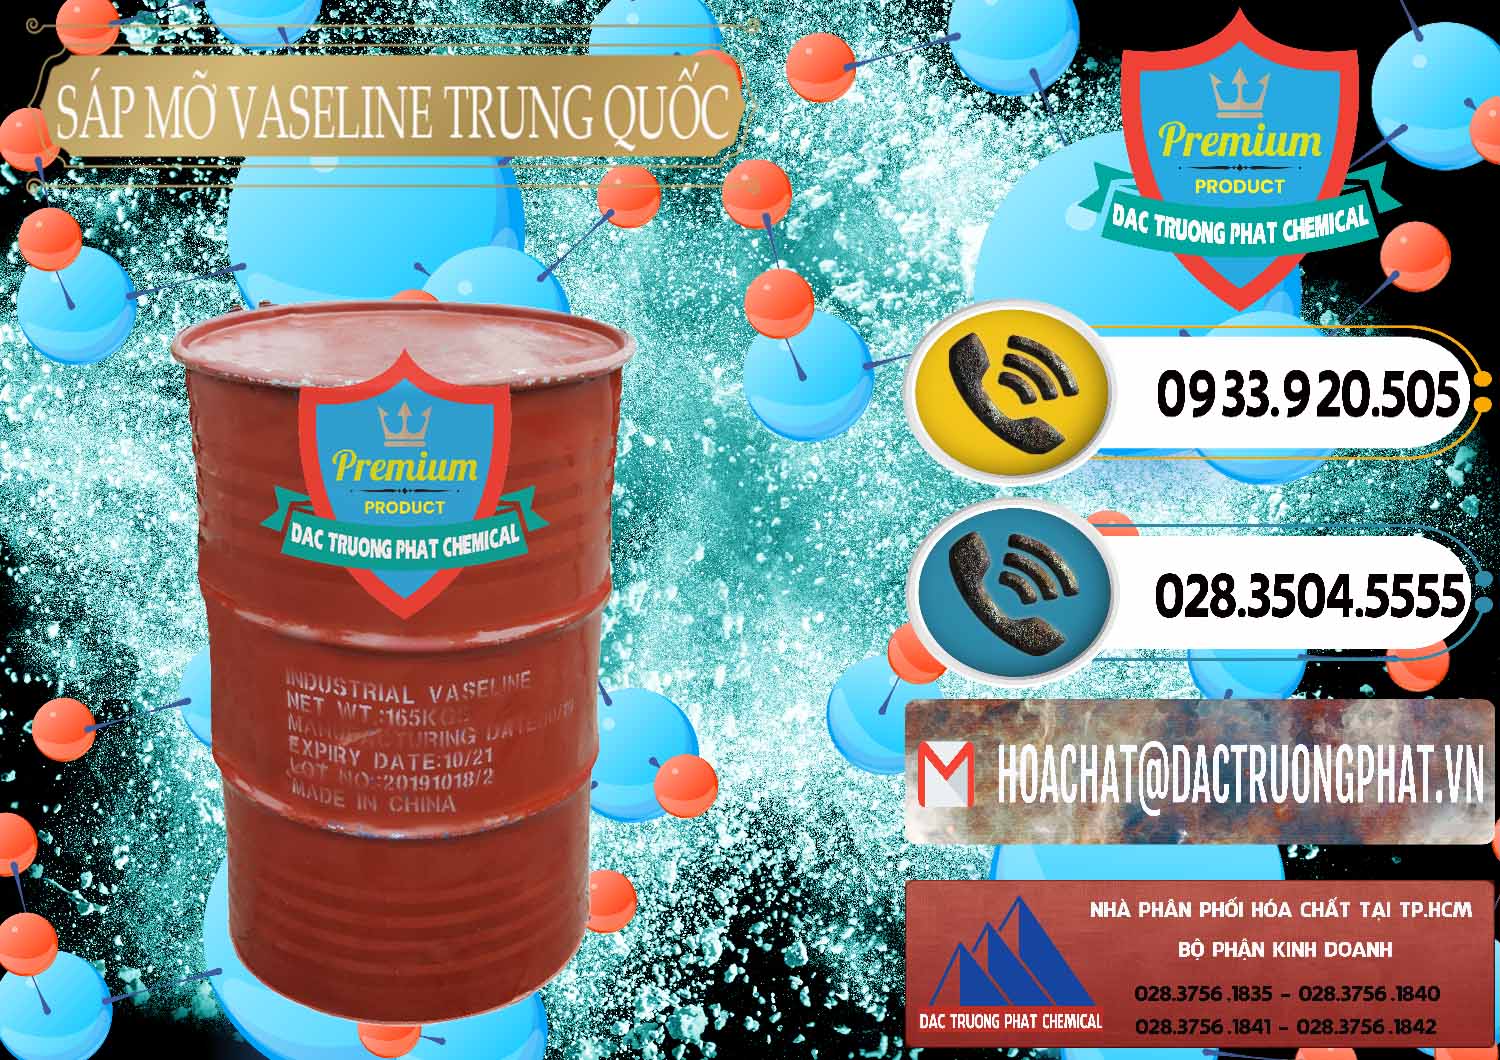 Nhà cung cấp _ bán Sáp Mỡ Vaseline Trung Quốc China - 0122 - Cty nhập khẩu và phân phối hóa chất tại TP.HCM - hoachatdetnhuom.vn